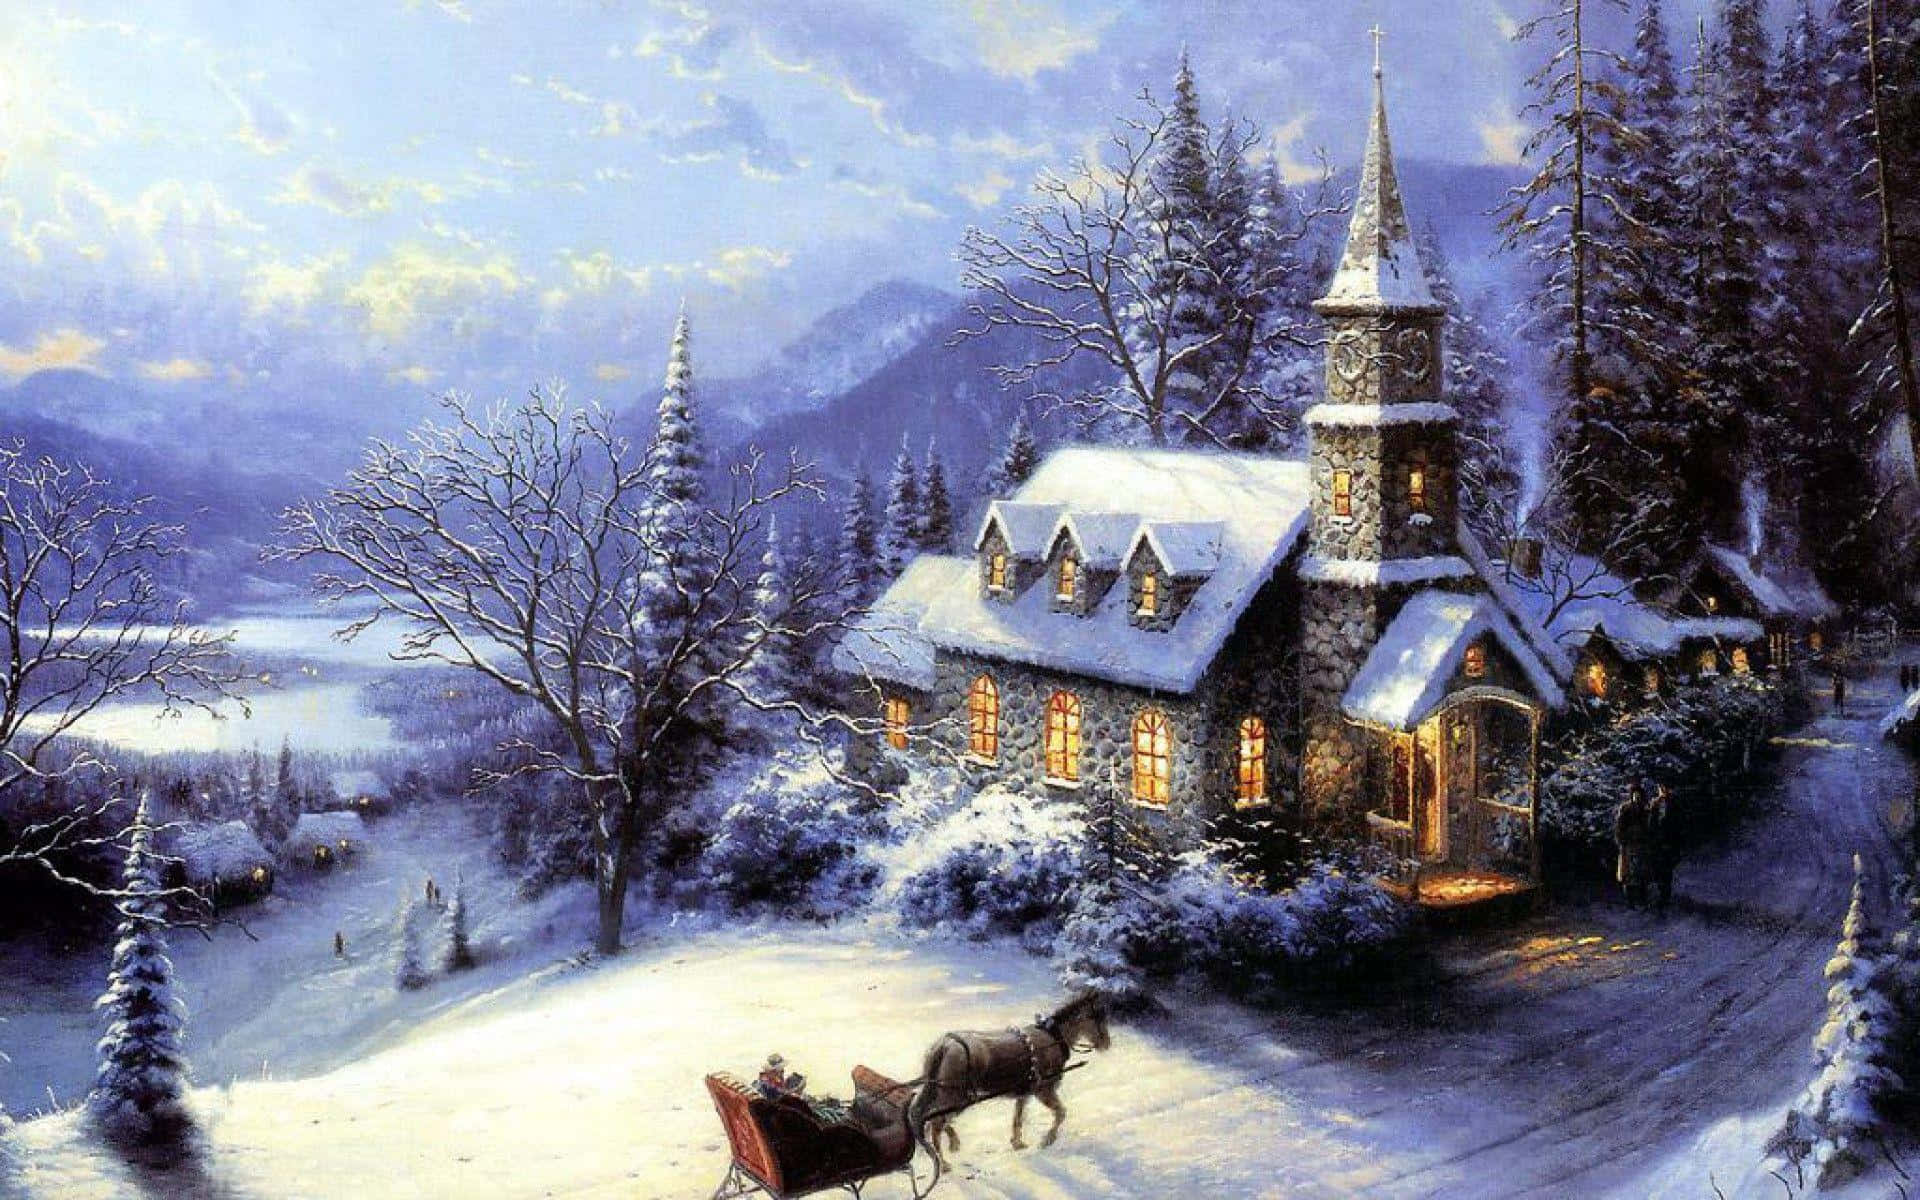 Magical Winter Wonderland Wallpaper